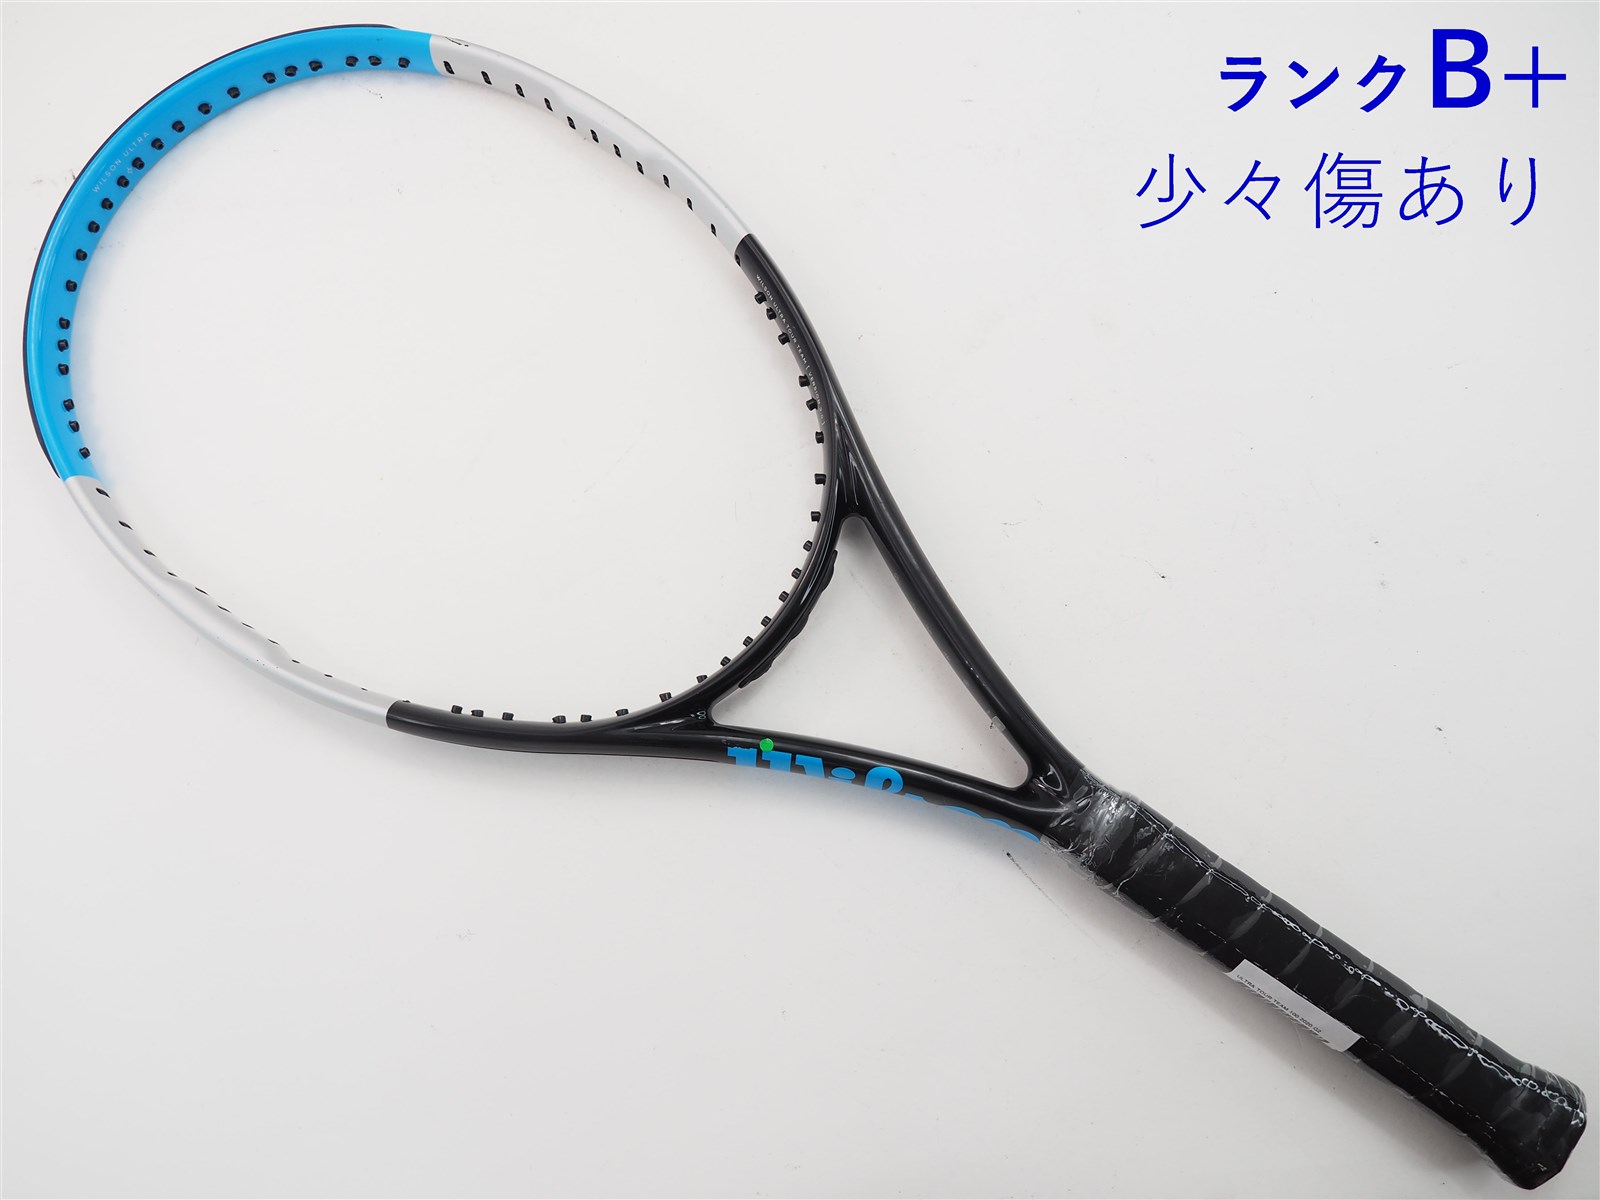 テニスラケット ウィルソン ウルトラ ツアー チーム 100 バージョン3.0 